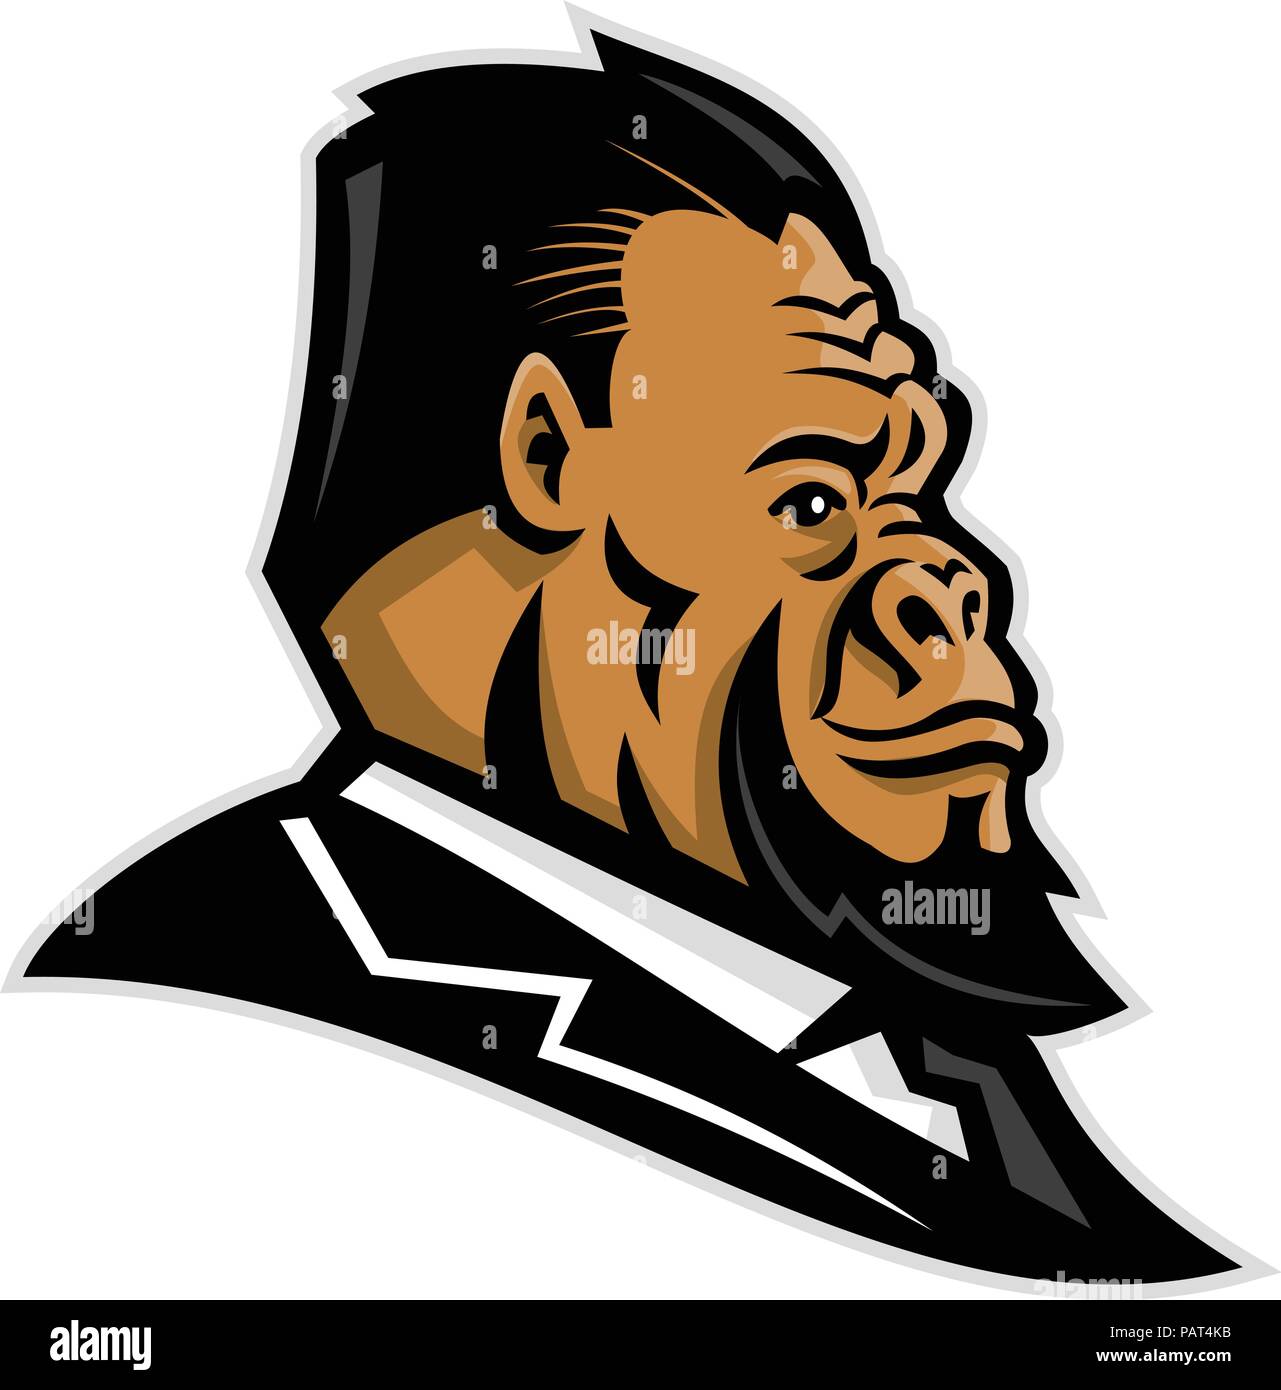 Maskottchen Symbol Abbildung: Kopf eines gepflegten Gorilla, ape, Primas, caveman, Neanderthal oder primitiven Mann mit Anzug Seitenansicht Stock Vektor